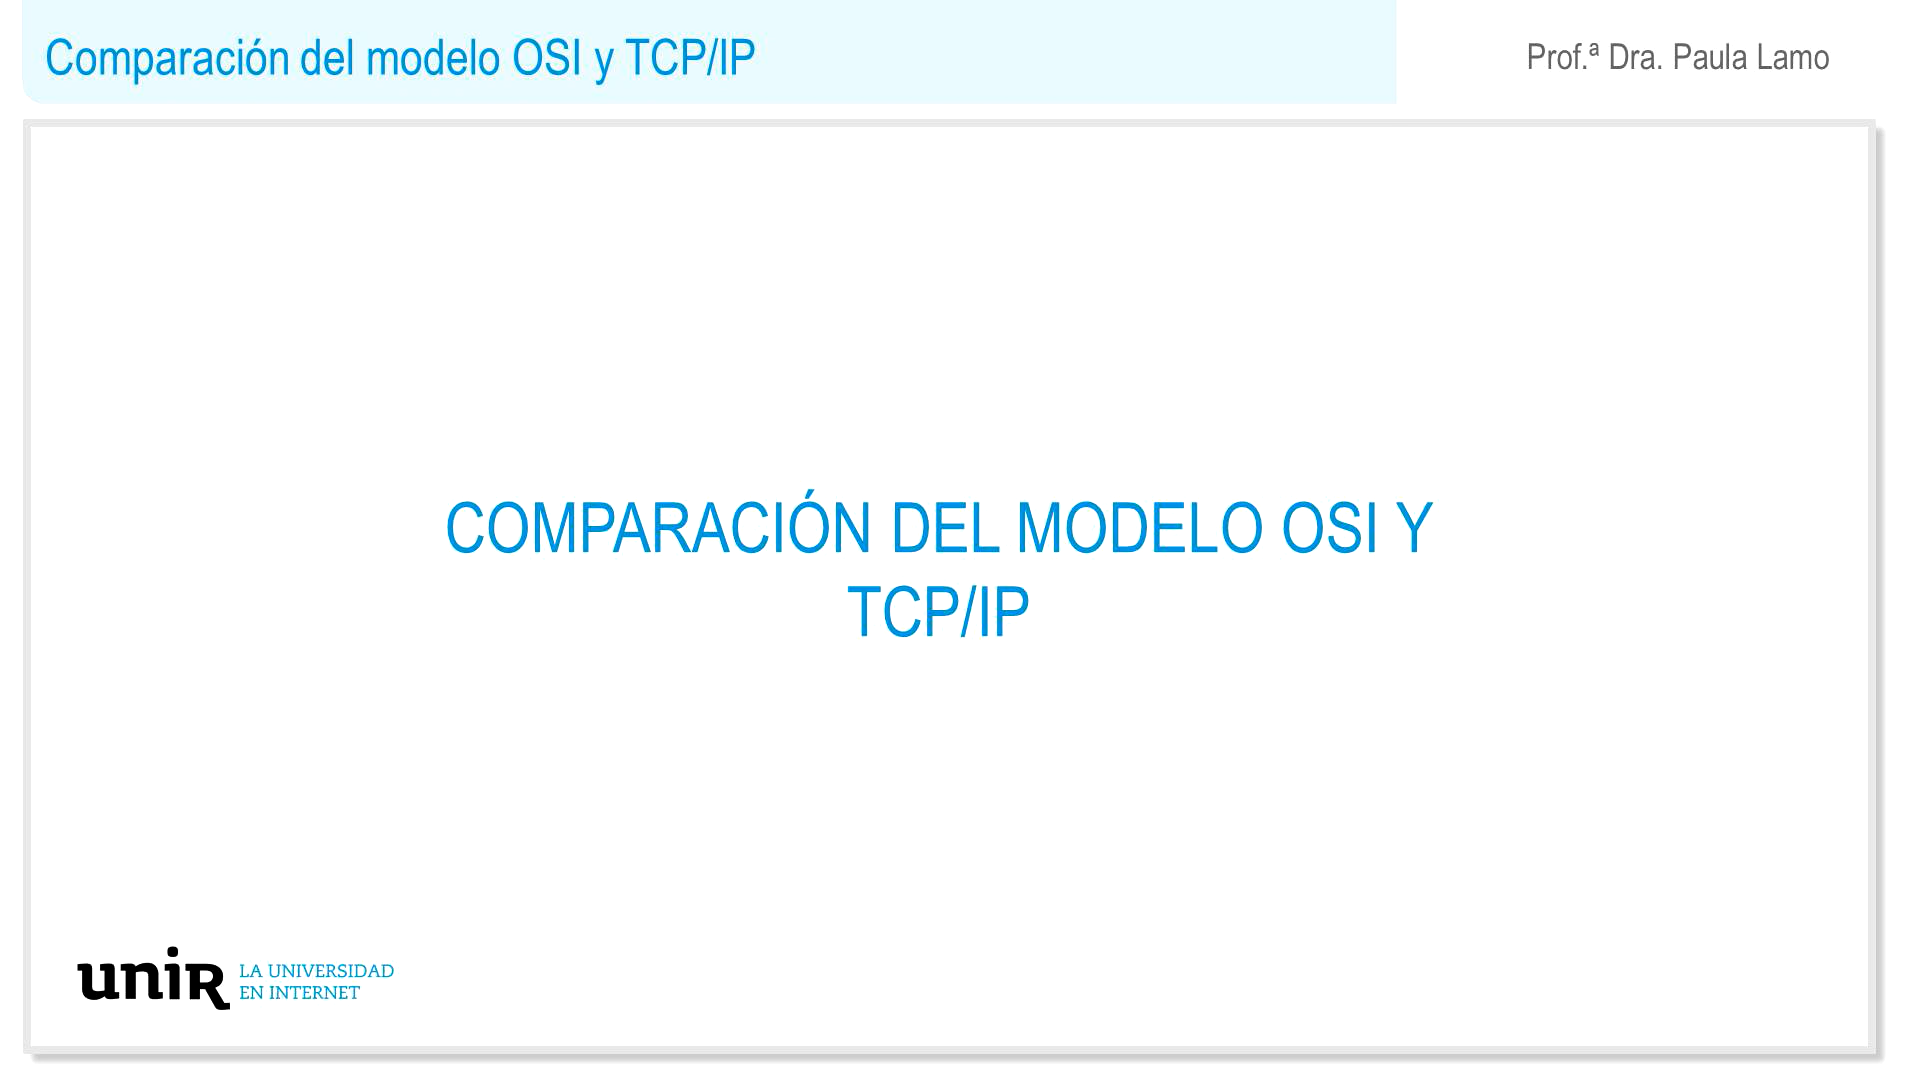 Comparacion-del-modelo-OSI-y-TCPIP